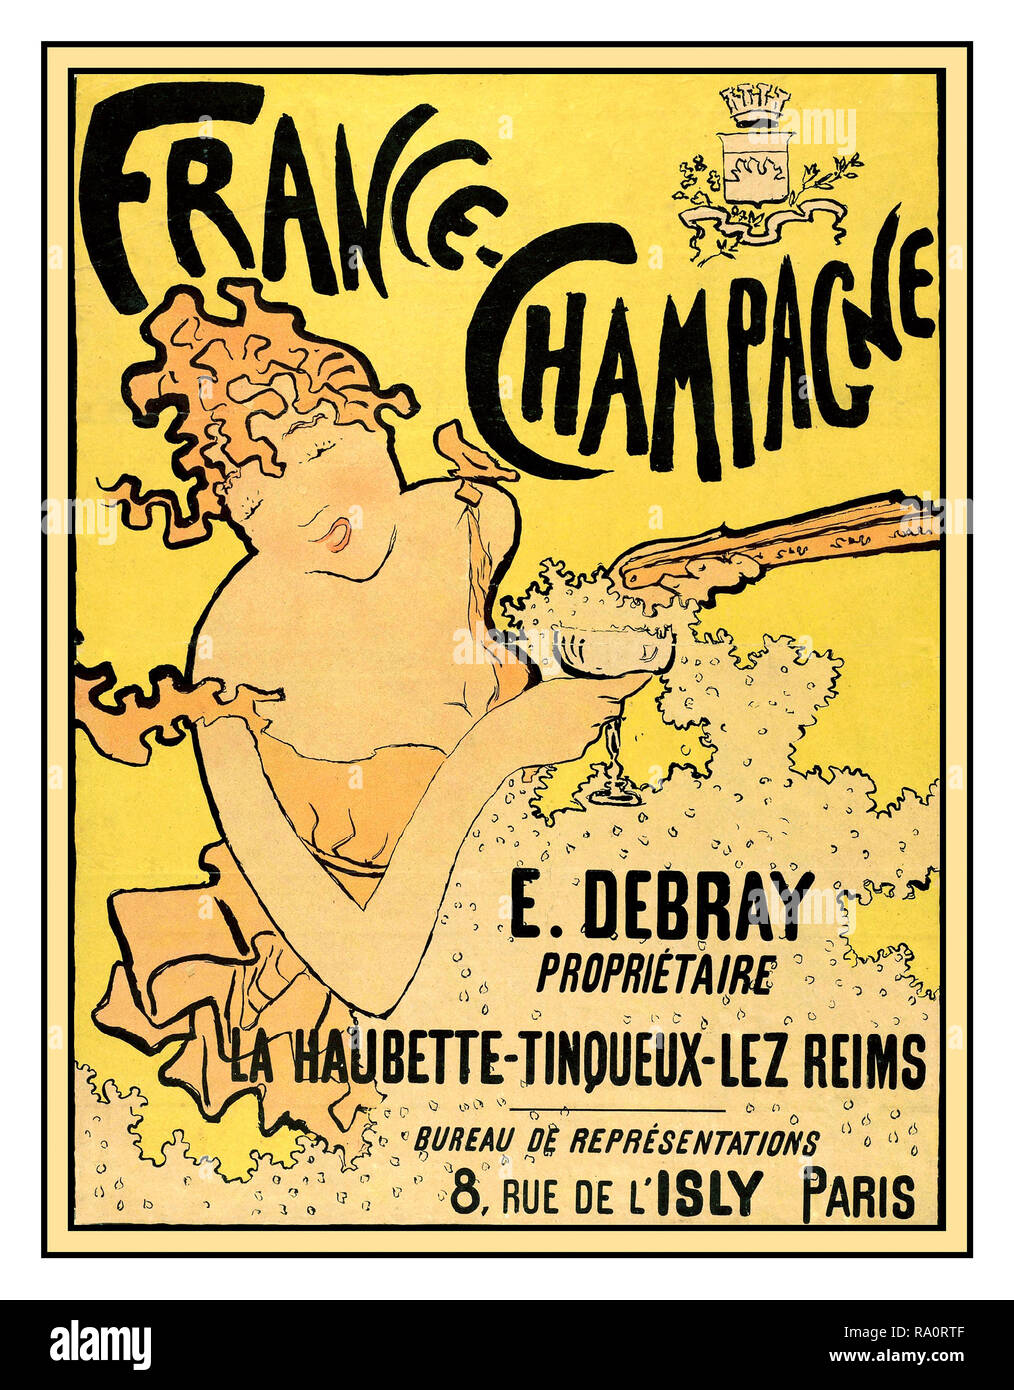 Vintage 'ebray' französischer Champagner Poster des Künstlers Pierre Bonnard im Art Nouveau Stil LA HAUBETTE - TINQUEX-LES-REIMS in Frankreich 1890-1900 Stockfoto